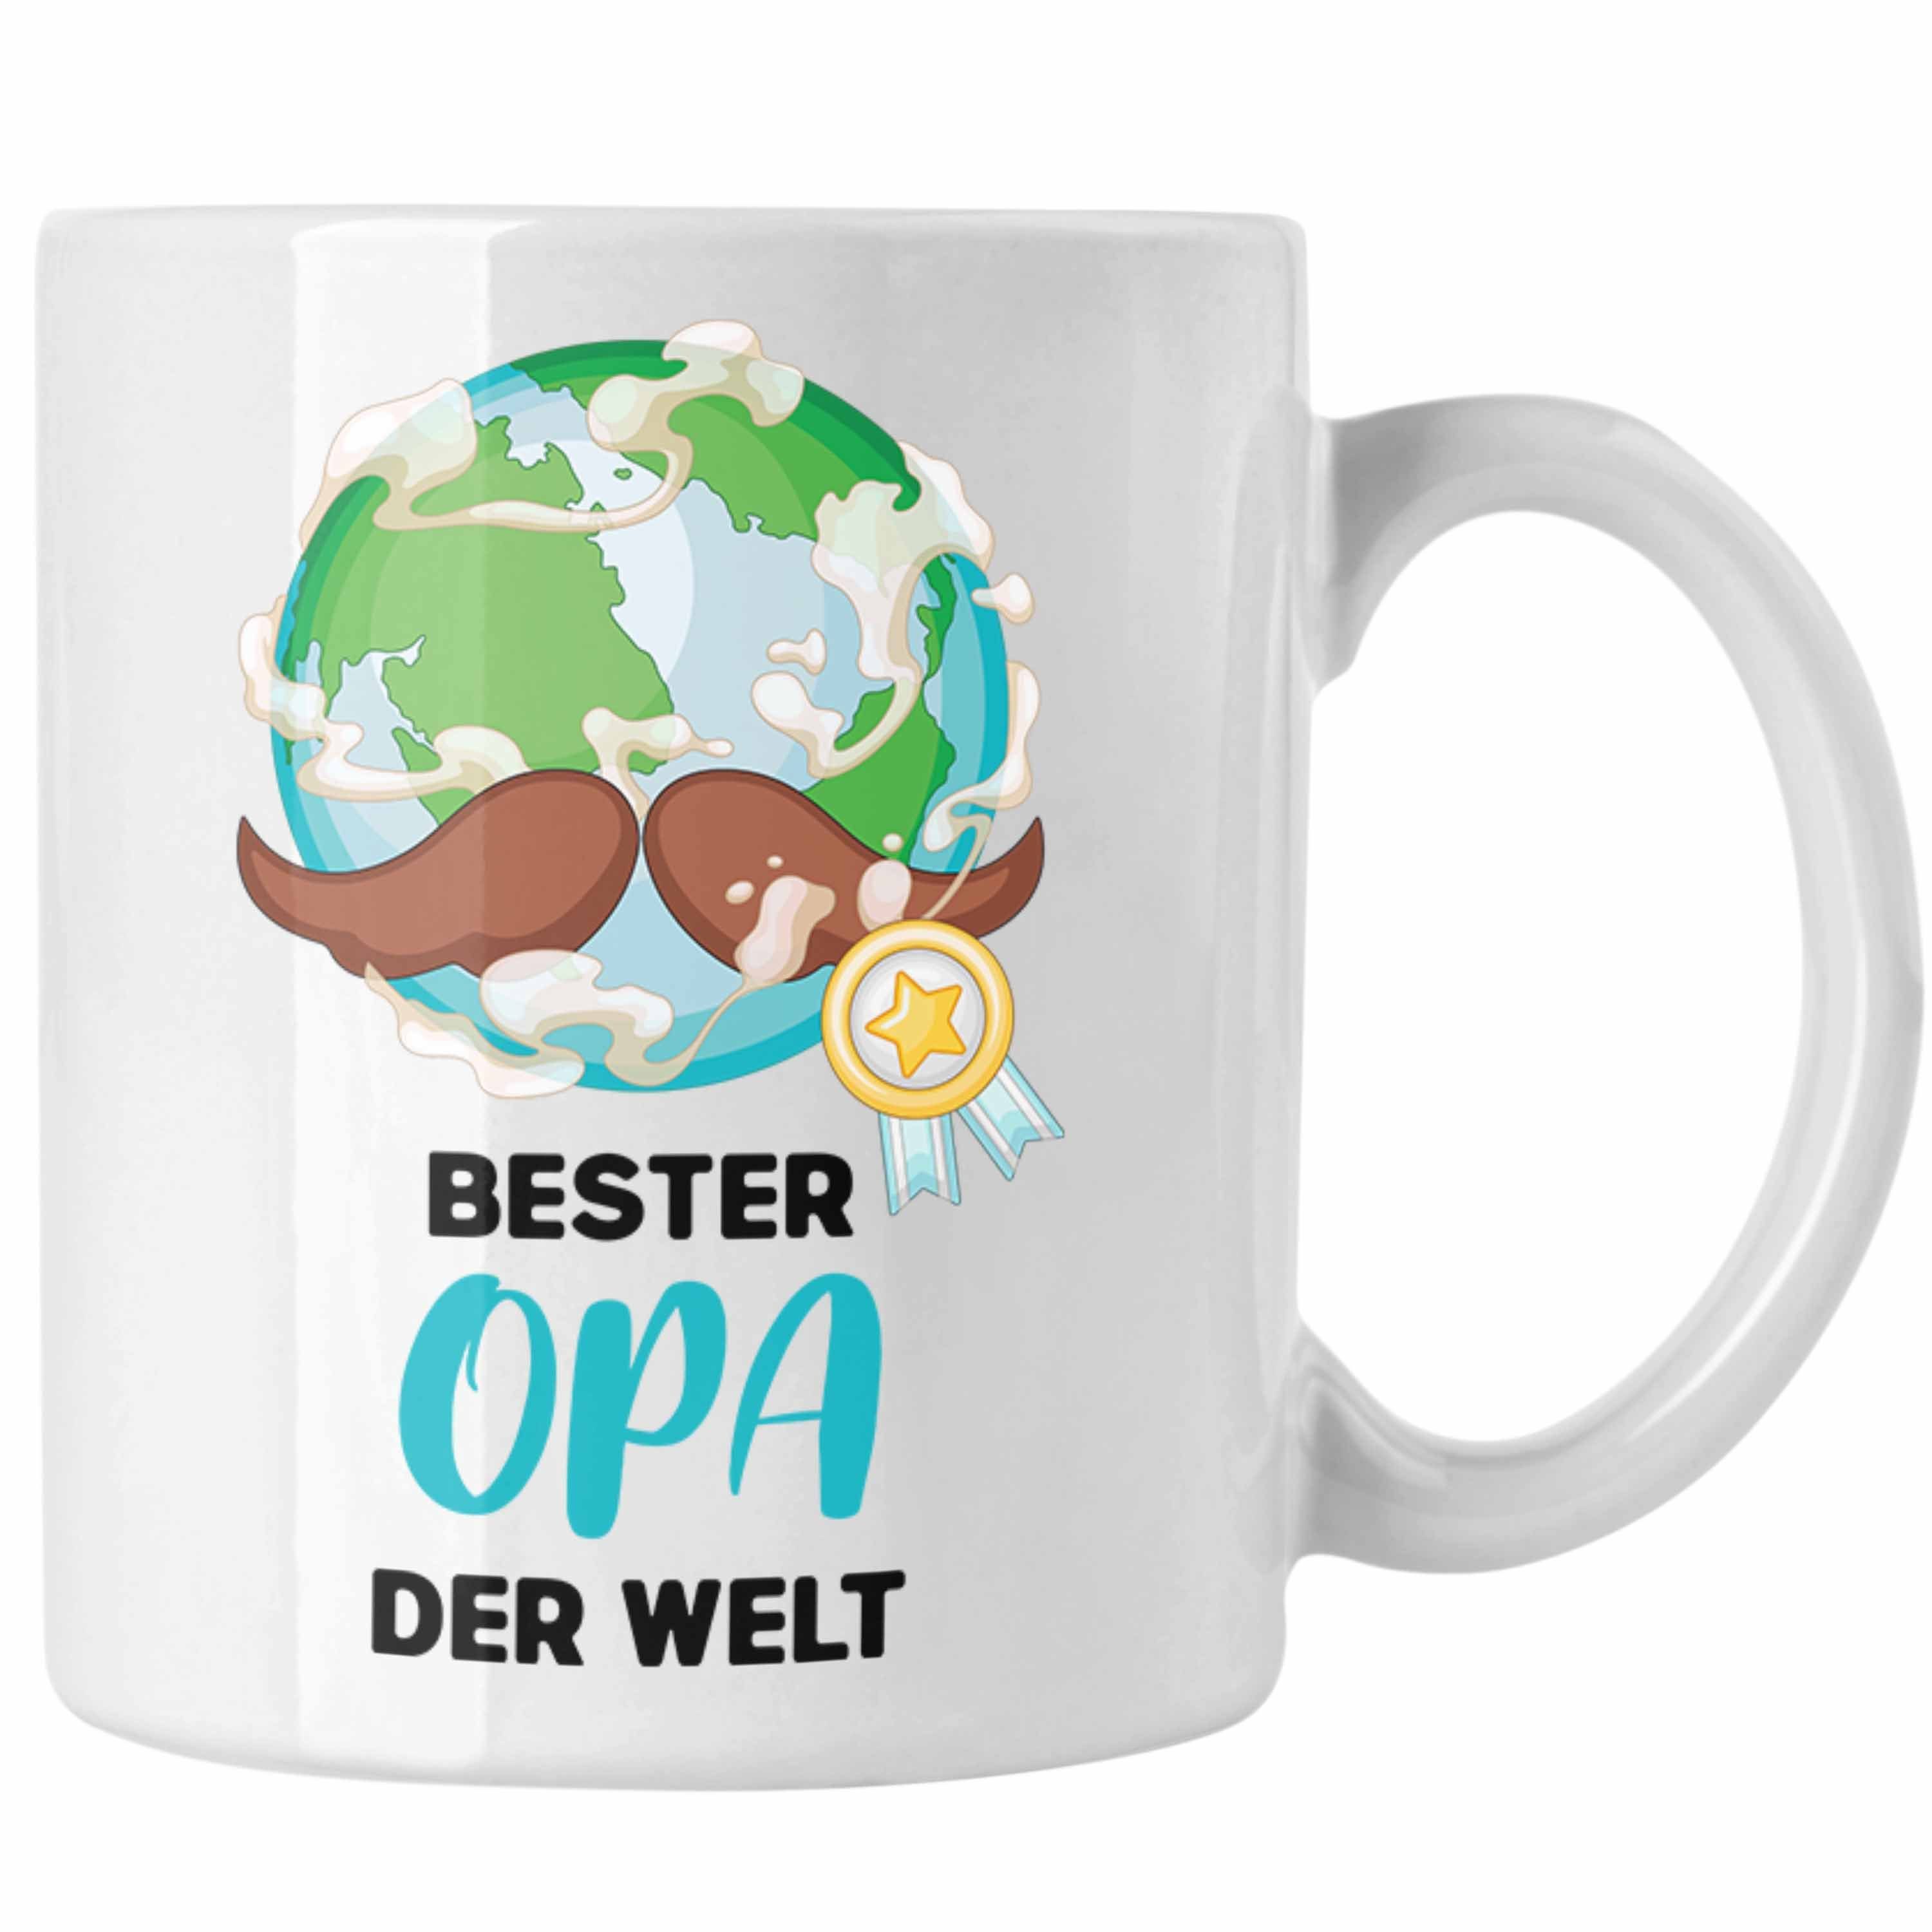 Trendation Tasse Trendation - Bester Opa Der Welt Geschenk Tasse Kaffeetasse Spruch Lustig von Enkel zum Geburtstag Weihnachten Weiss